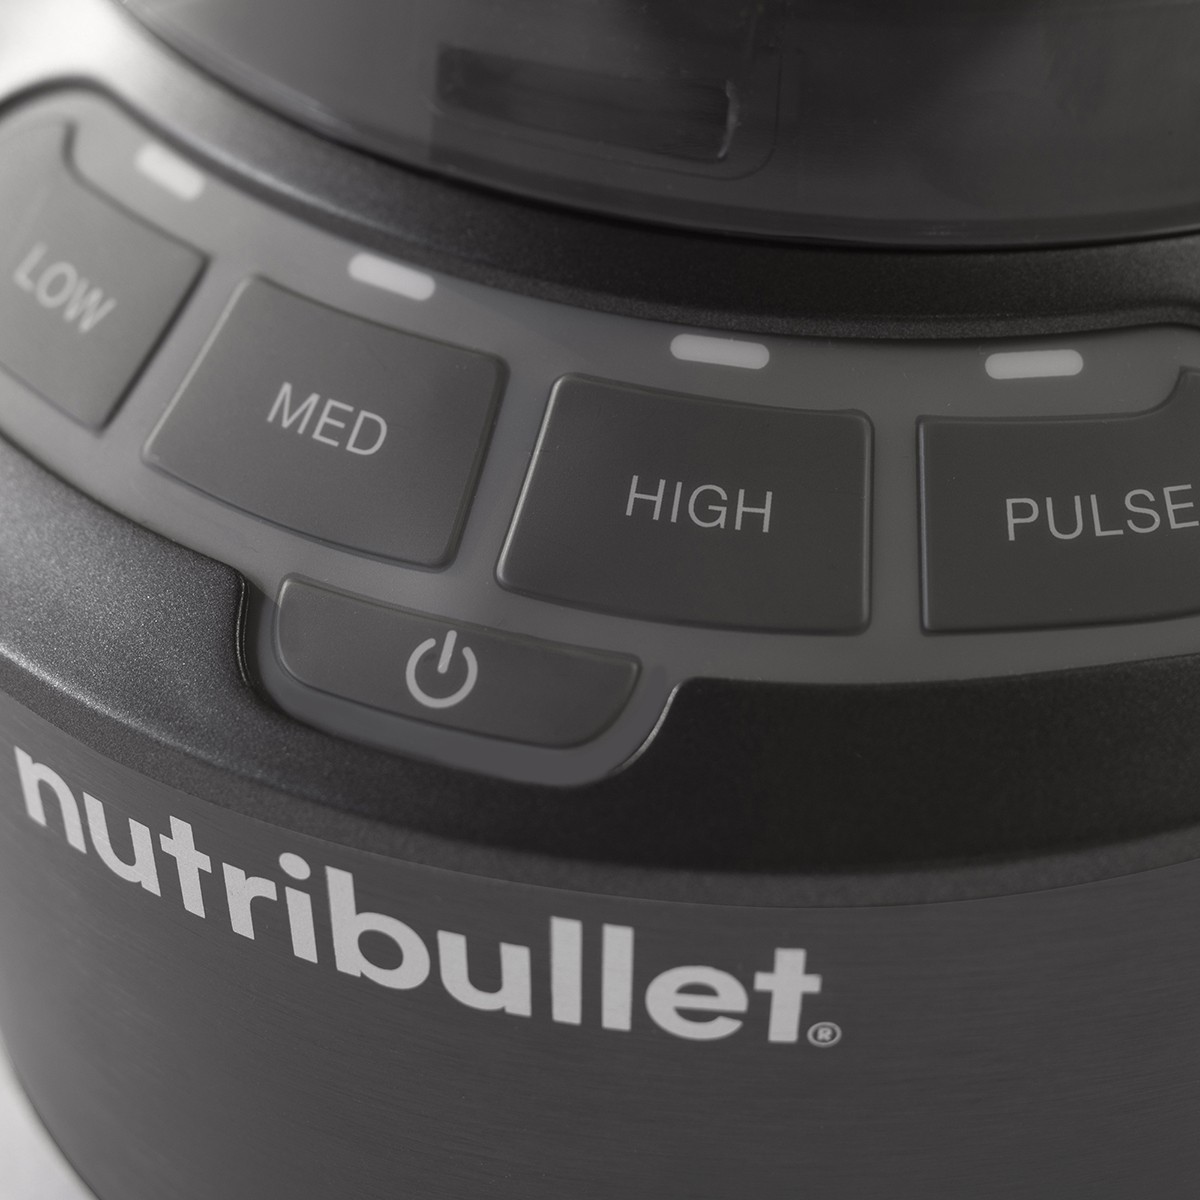 NutriBullet Blender Combo With Single Serve Cups NBF50500, Color